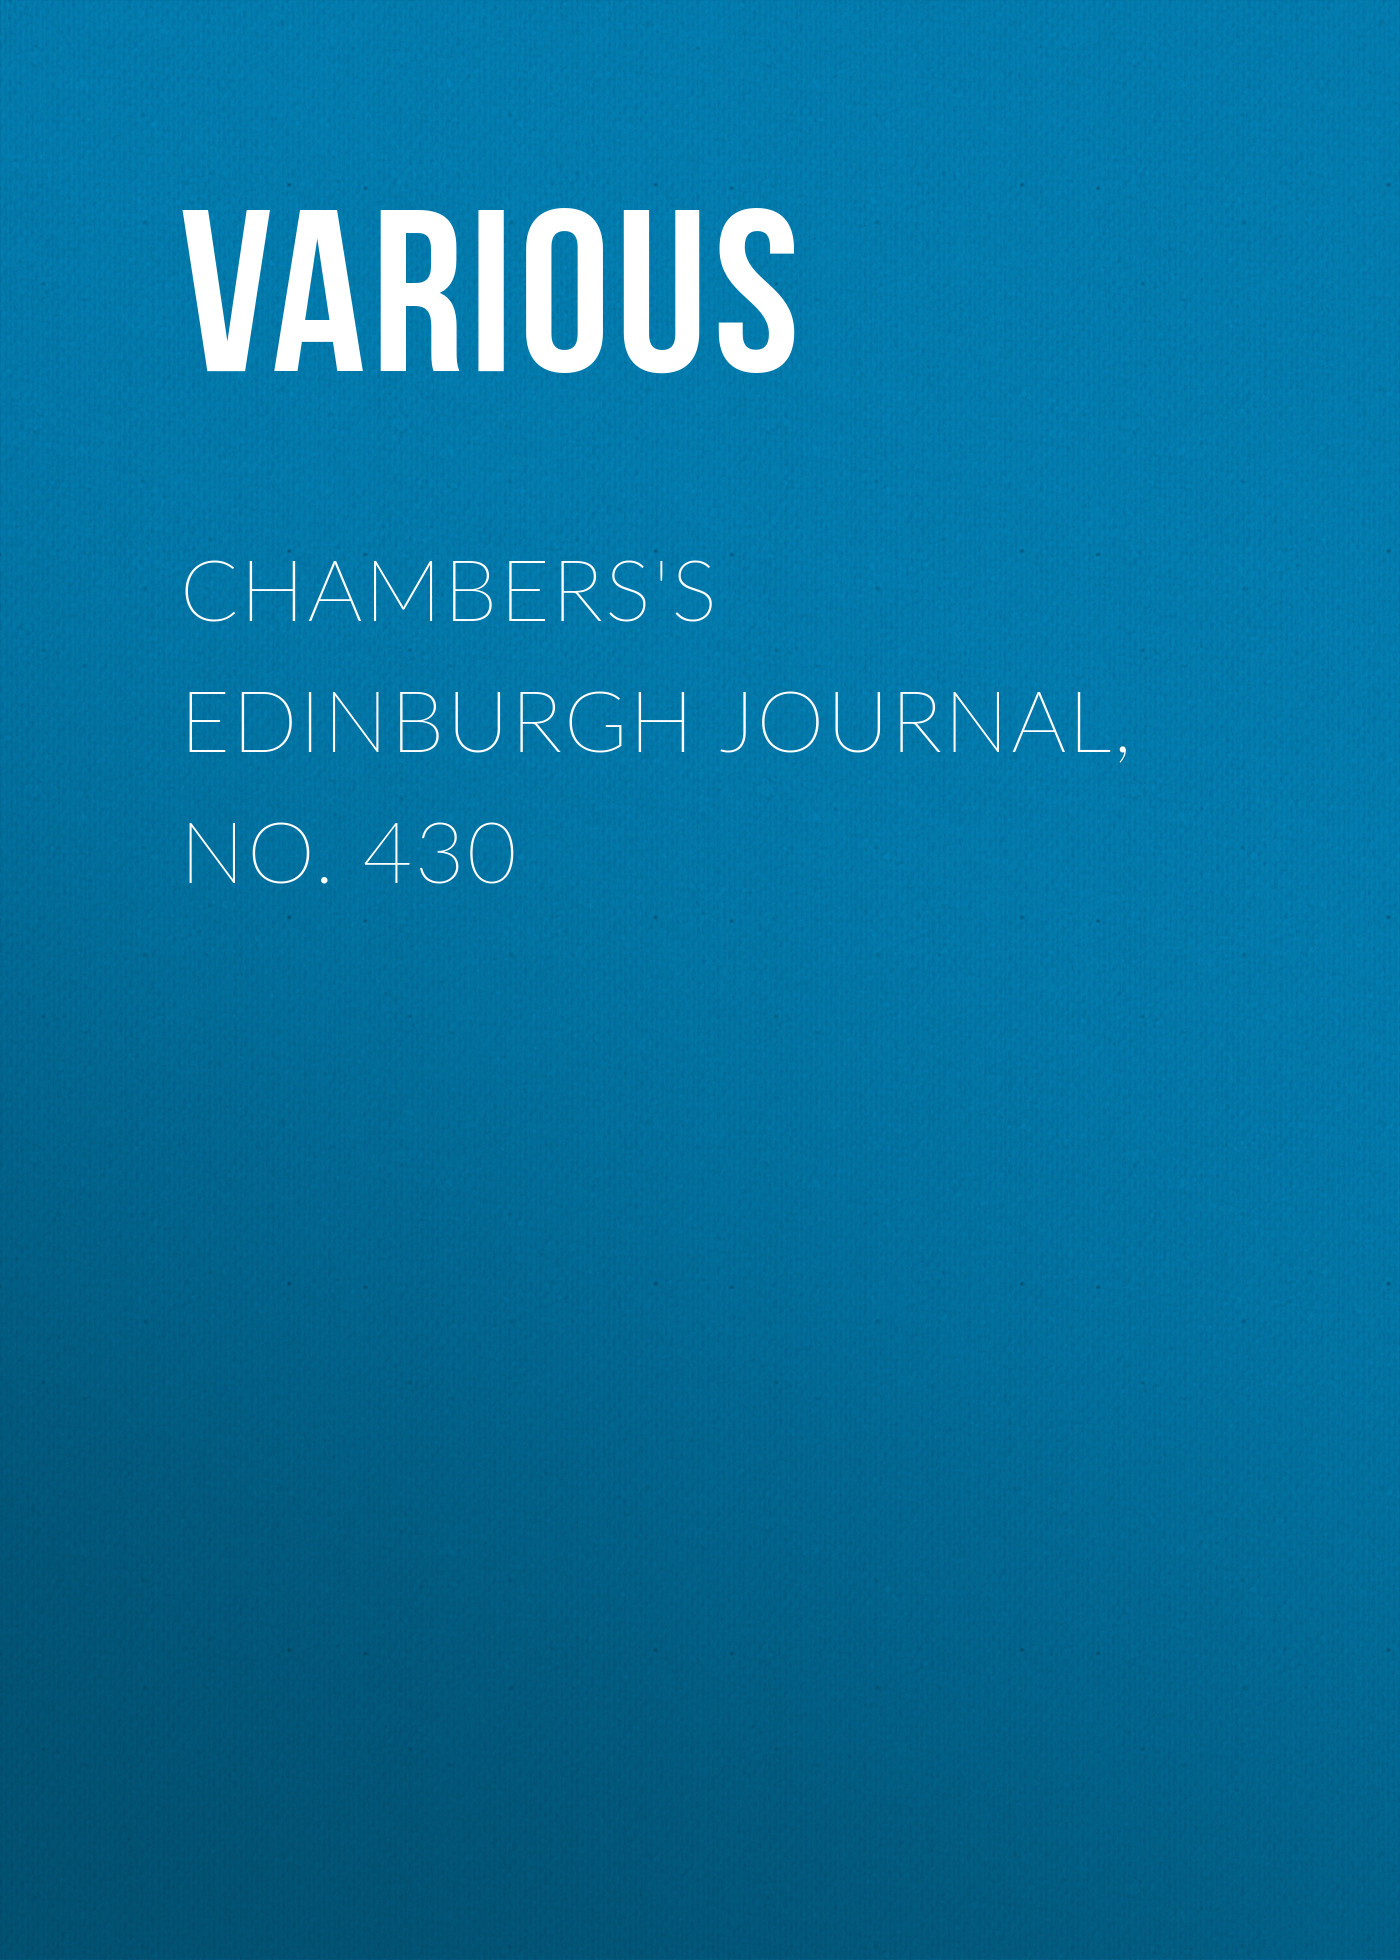 Книга Chambers's Edinburgh Journal, No. 430 из серии , созданная  Various, может относится к жанру Зарубежная старинная литература, Журналы, Зарубежная образовательная литература. Стоимость электронной книги Chambers's Edinburgh Journal, No. 430 с идентификатором 35492207 составляет 0 руб.